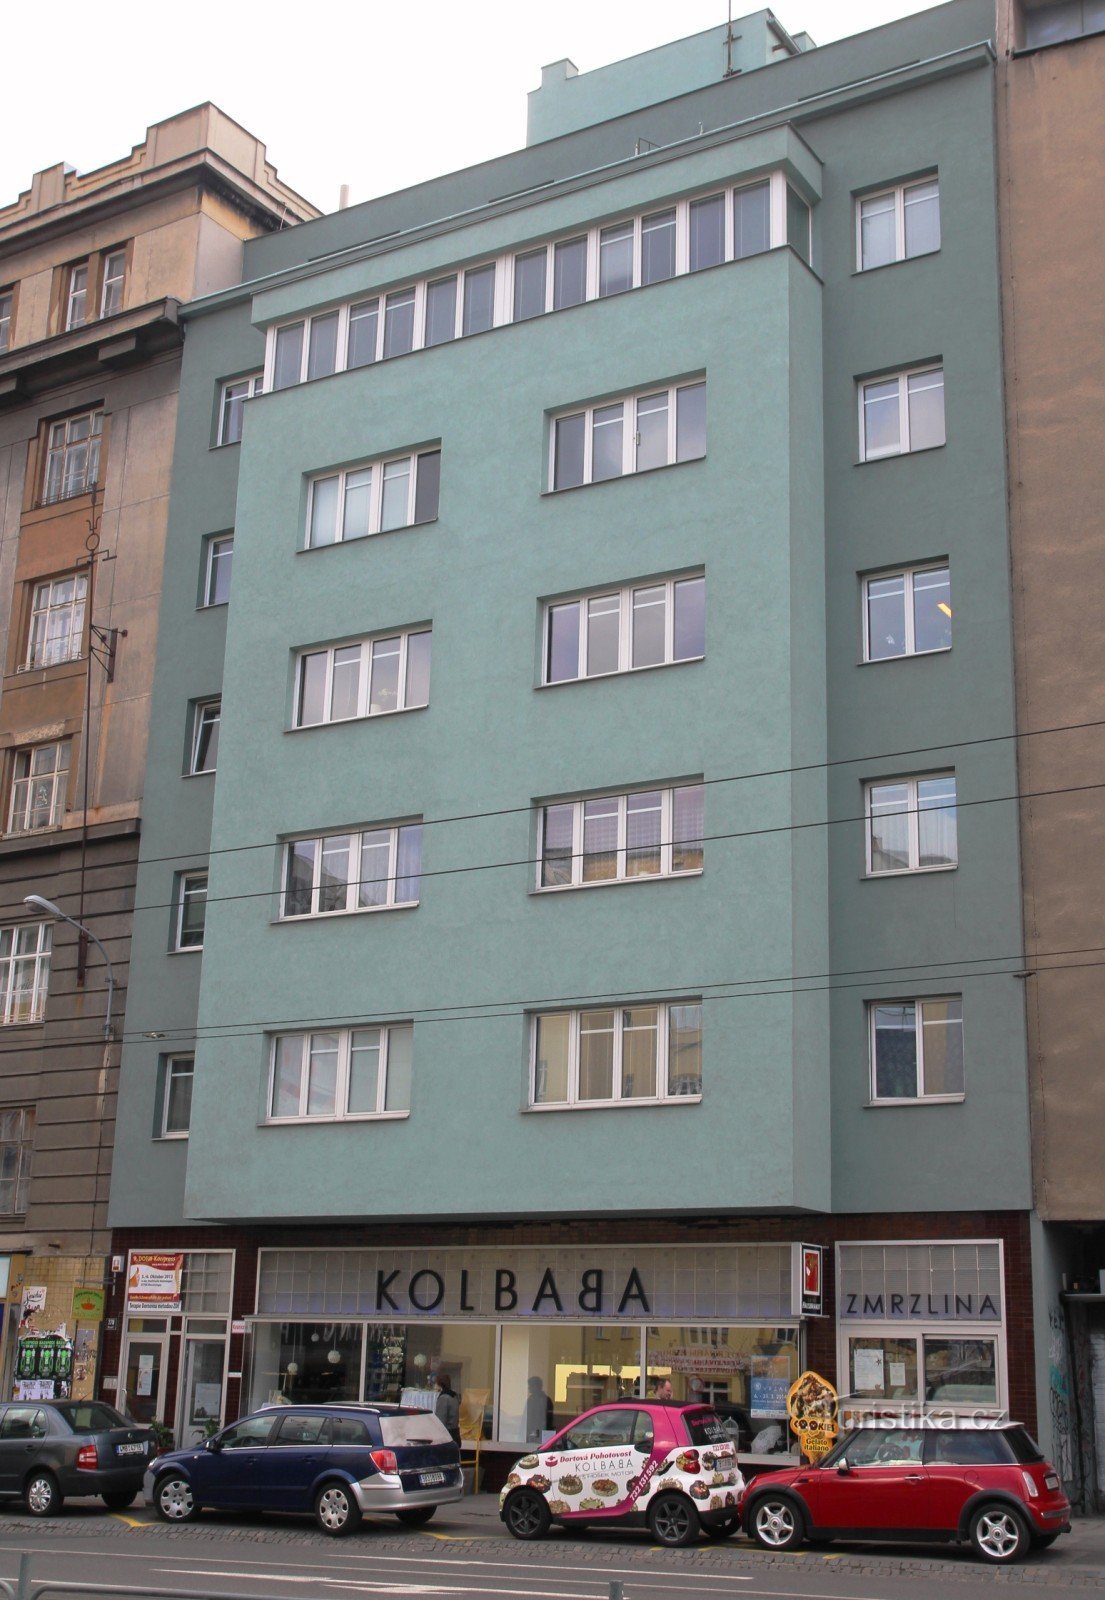 Închiriere casă Kolbaba pe strada Kounicová